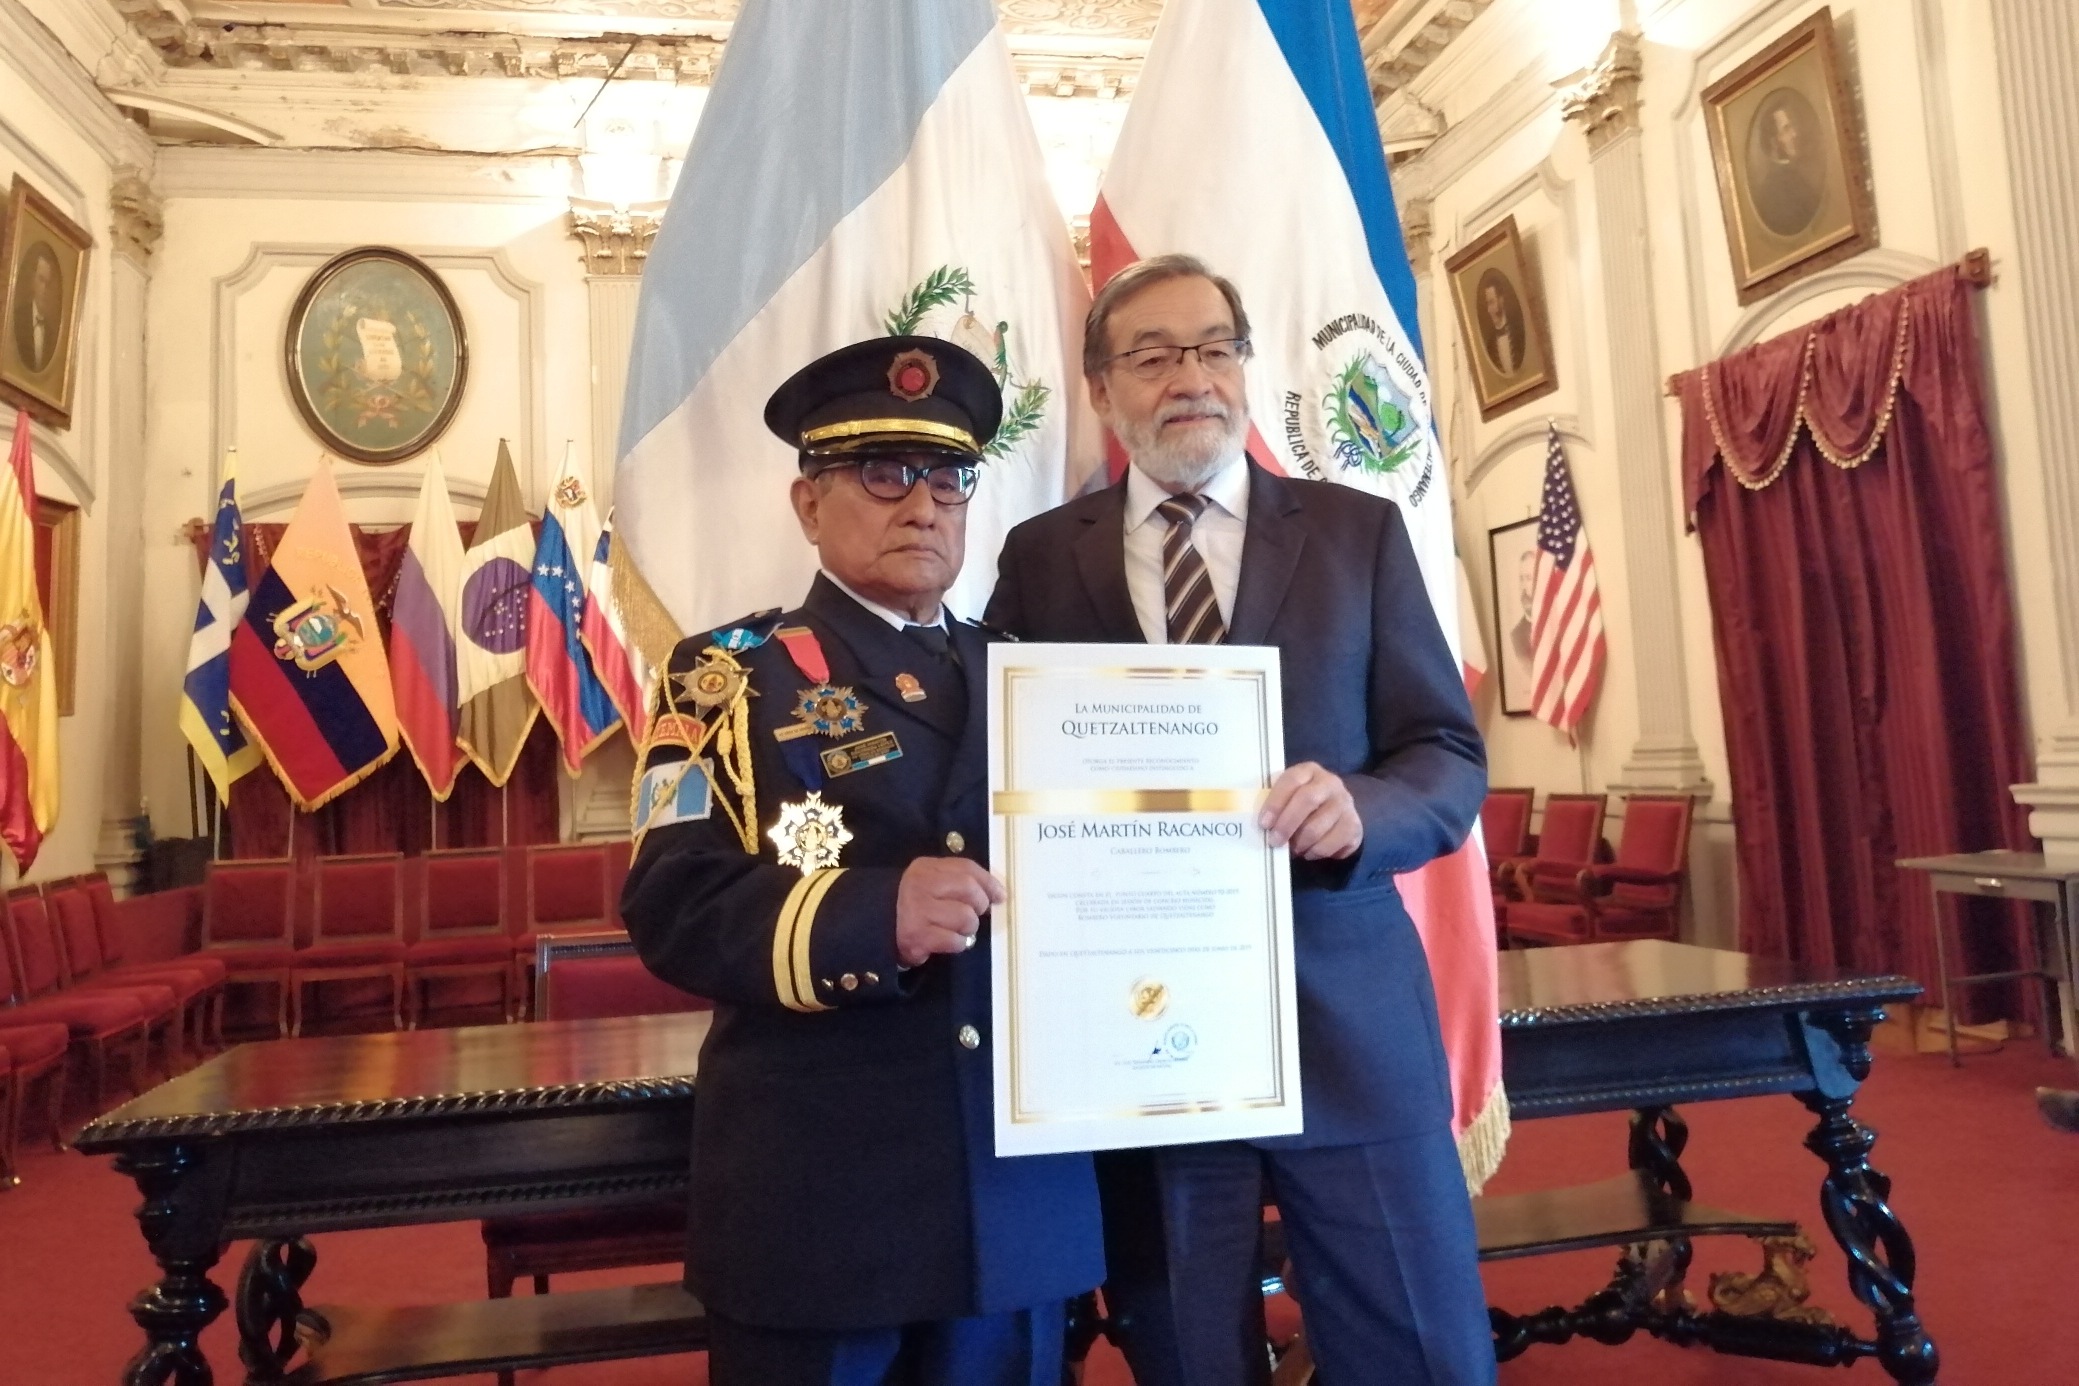 José Martín Racancoj recibió un diploma que lo acredita como Ciudadano Distinguido de Quetzaltenango. (Foto Prensa Libre: María Longo) 